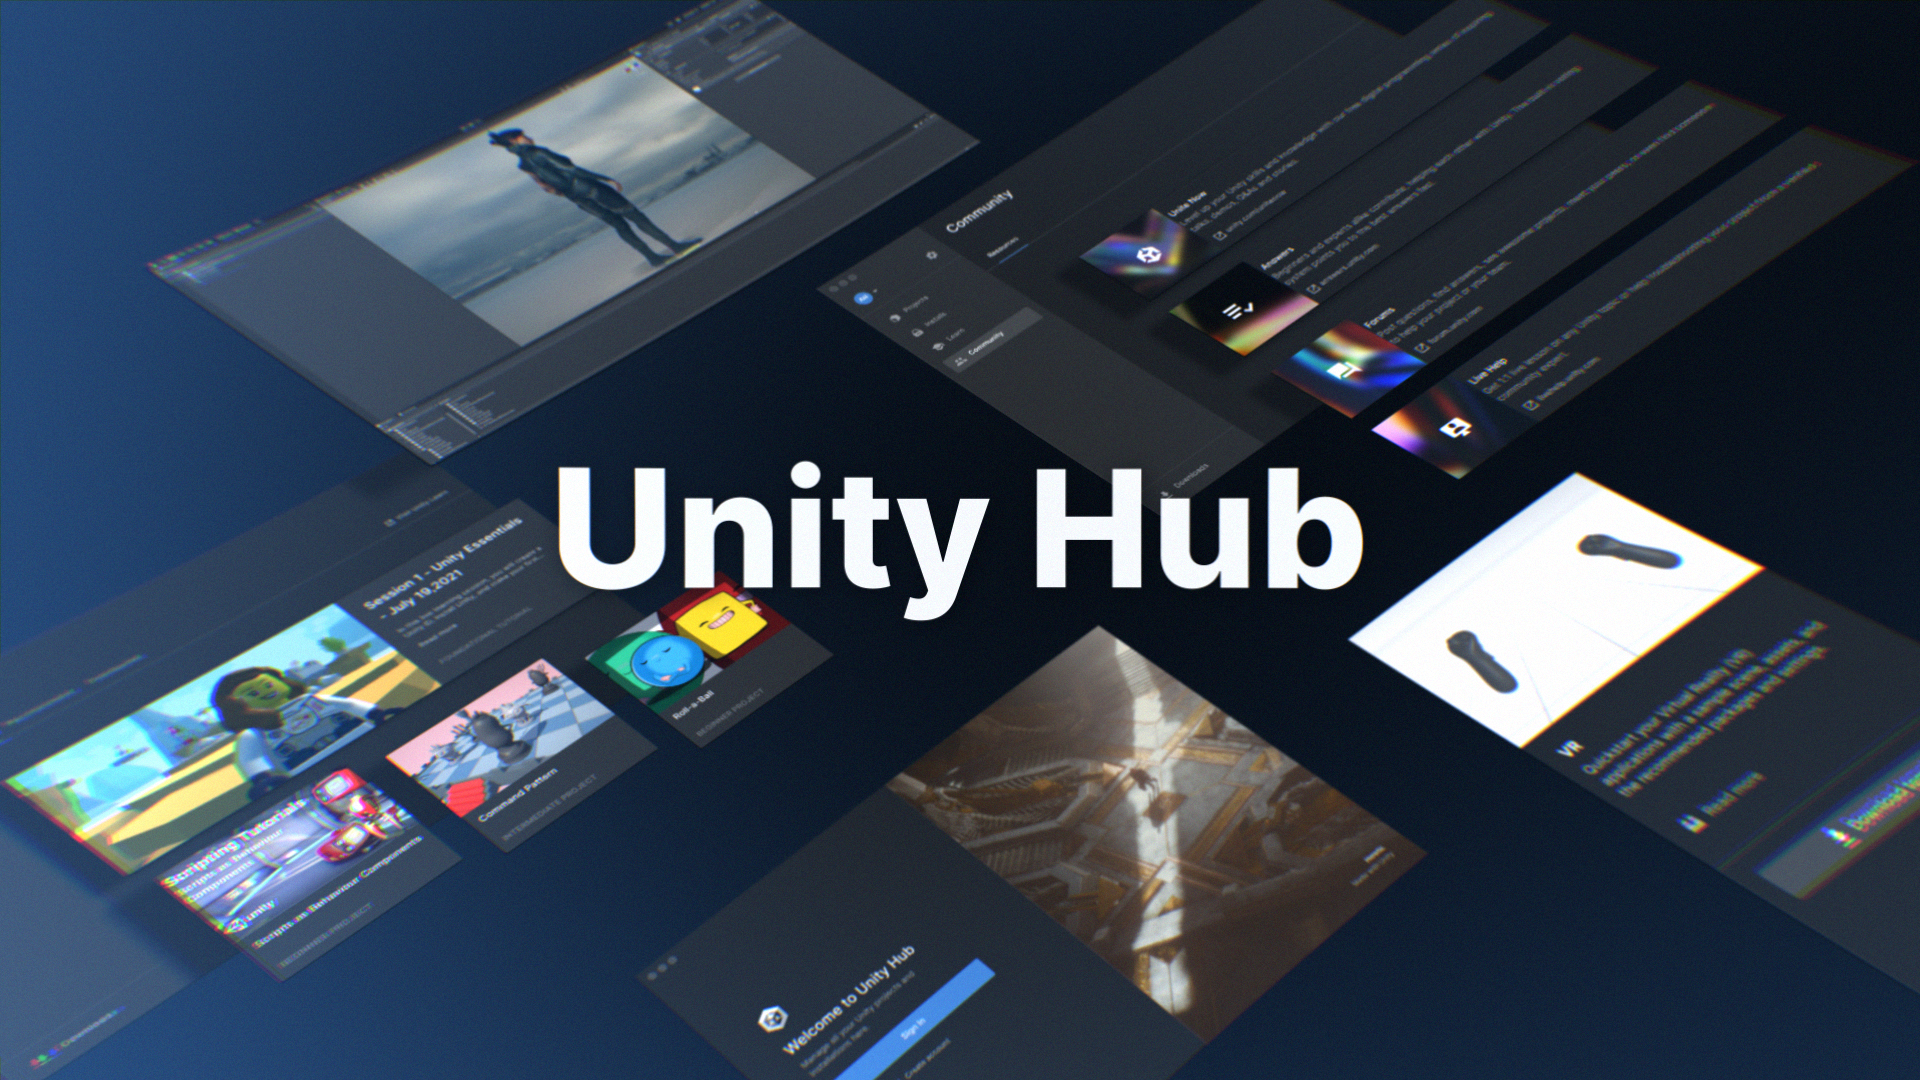 Unity Hub promo asset